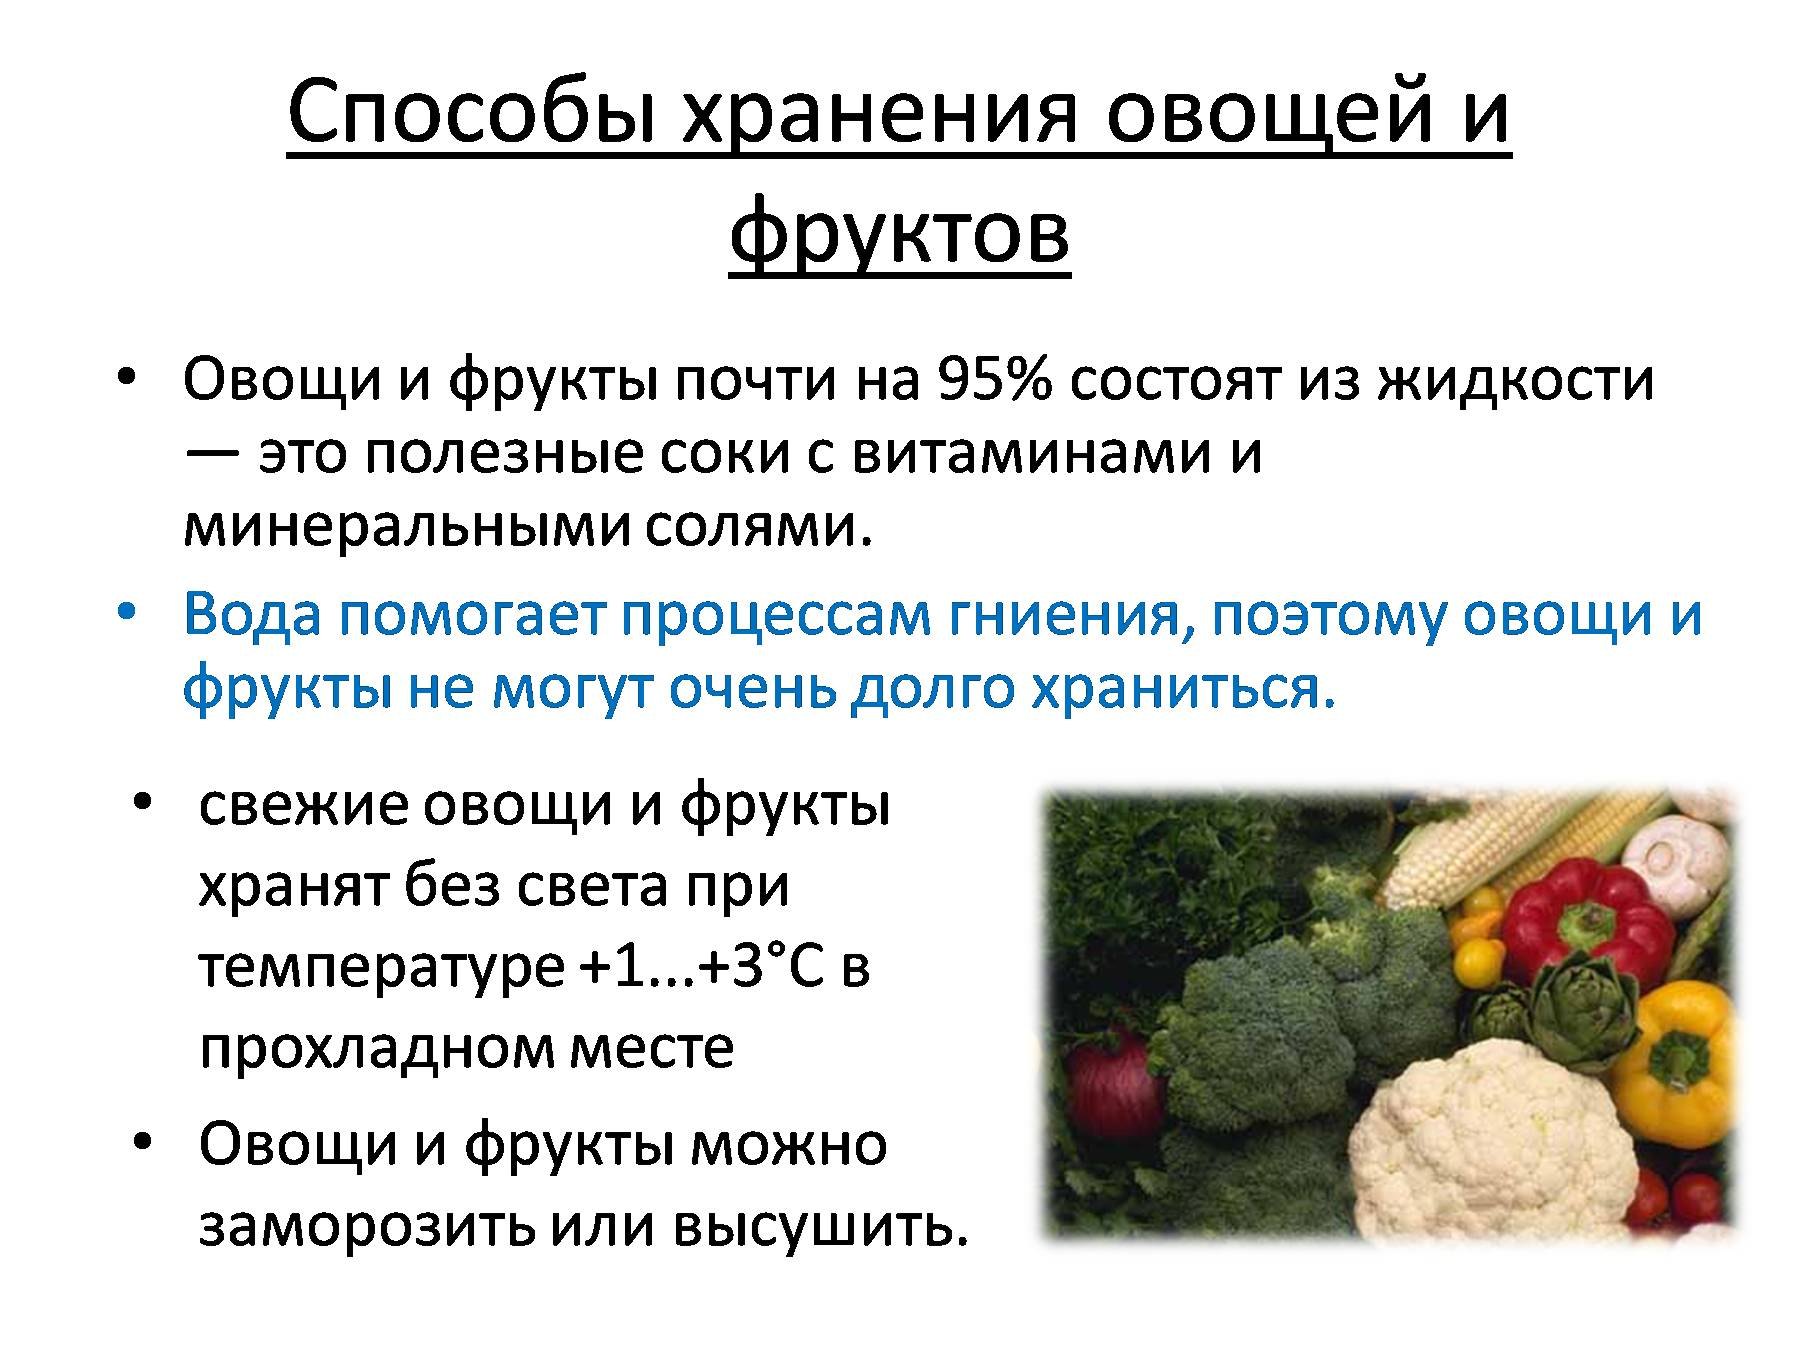 Определение доброкачественности овощей. Способы хранения овощей. Методы сохранения овощей и плодов. Способы хранения овощей и фрукто. Условия хранения плодов и овощей.